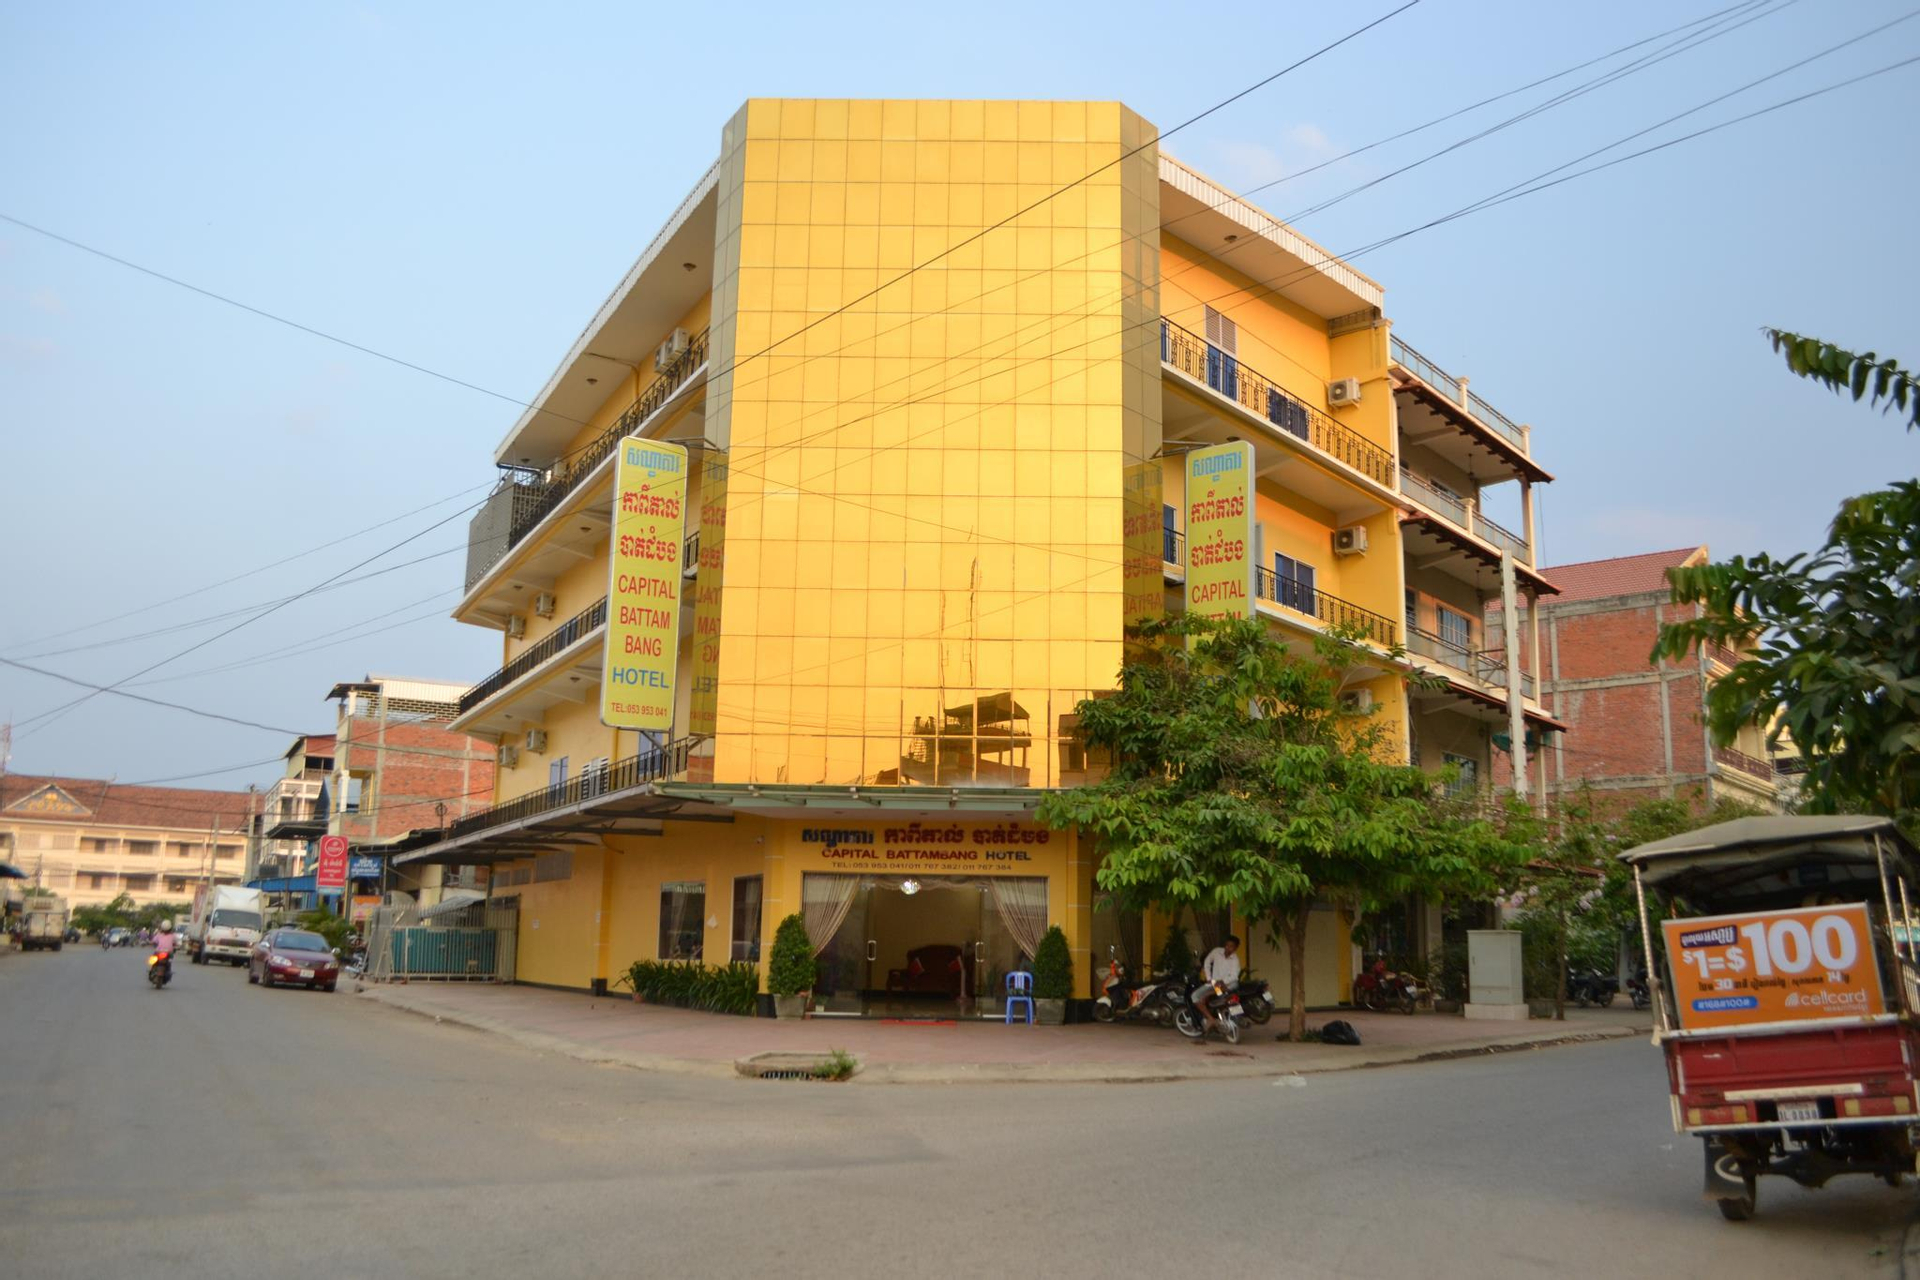 Capital Battambang Hotel, Svay Pao